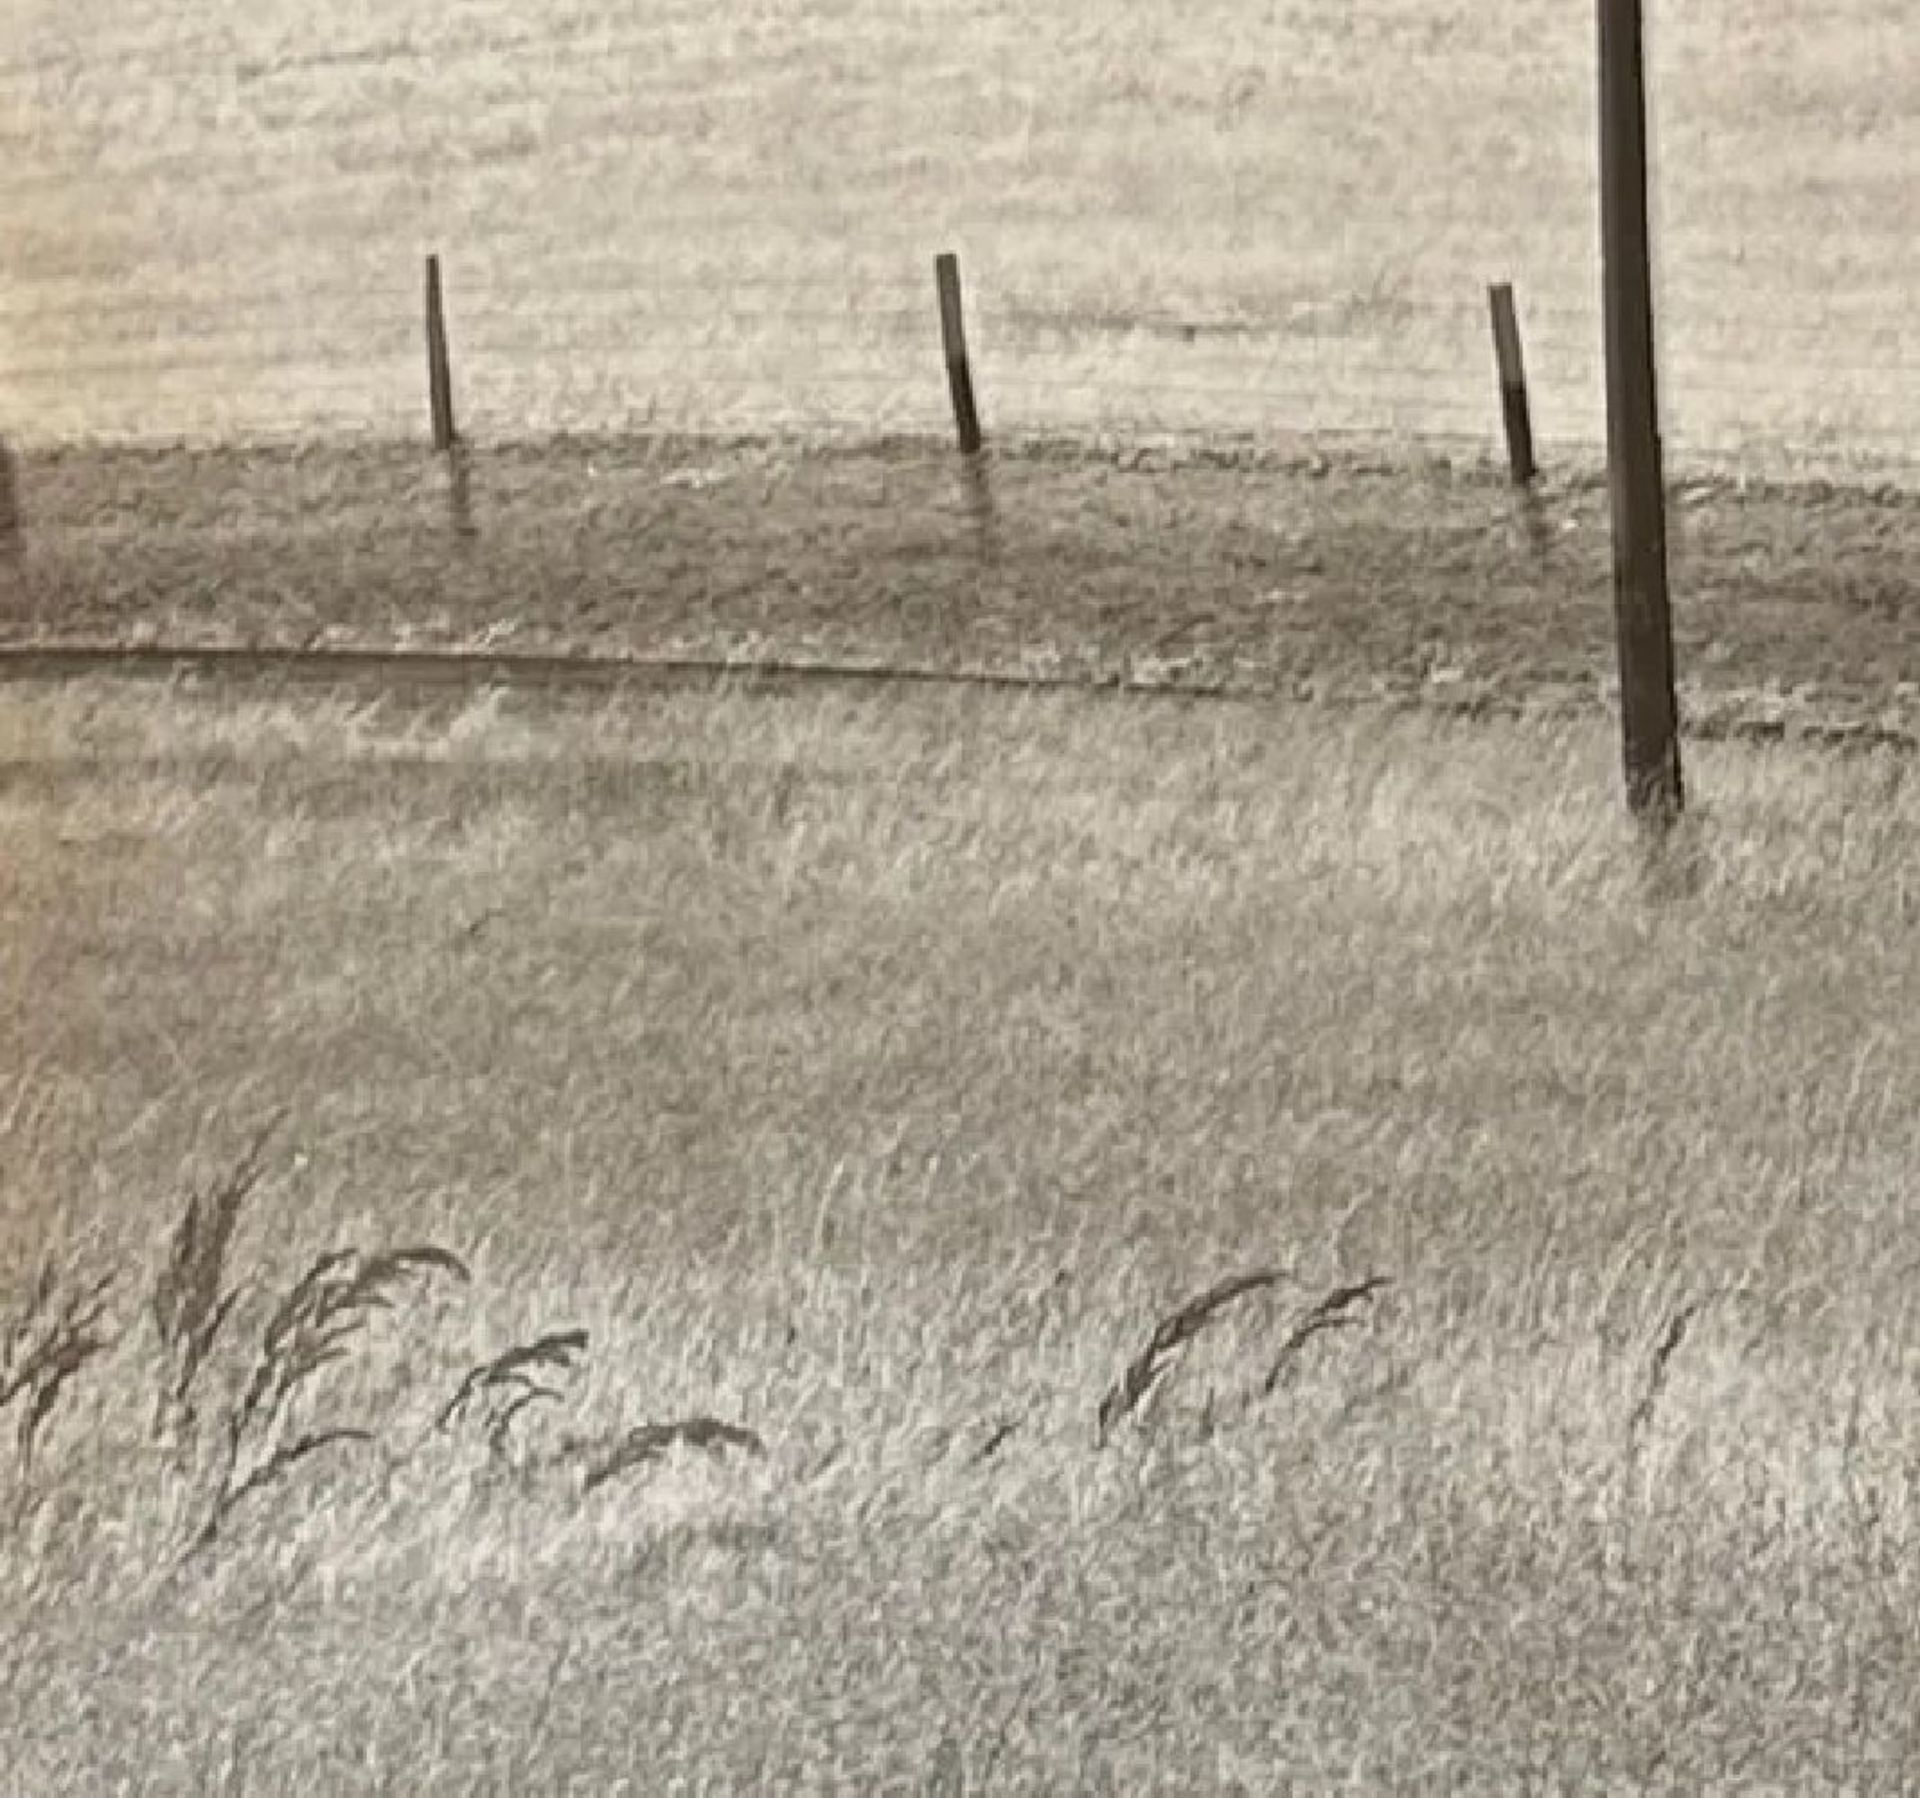 Edward Weston "Untitled" Print - Image 3 of 6